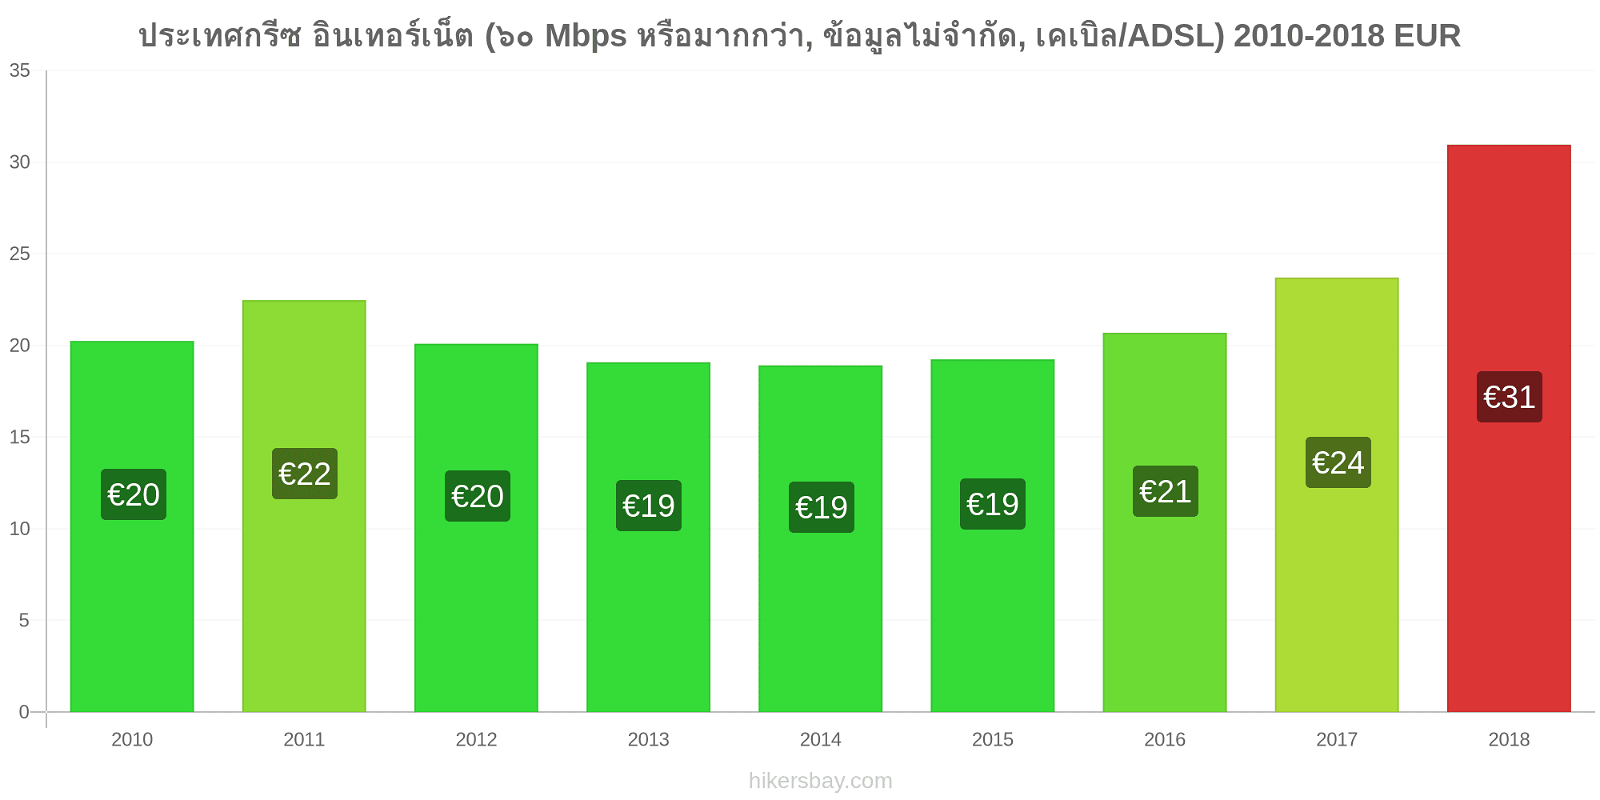 ประเทศกรีซ การเปลี่ยนแปลงราคา อินเทอร์เน็ต (60 Mbps หรือมากกว่า, ข้อมูลไม่จำกัด, เคเบิล/ADSL) hikersbay.com